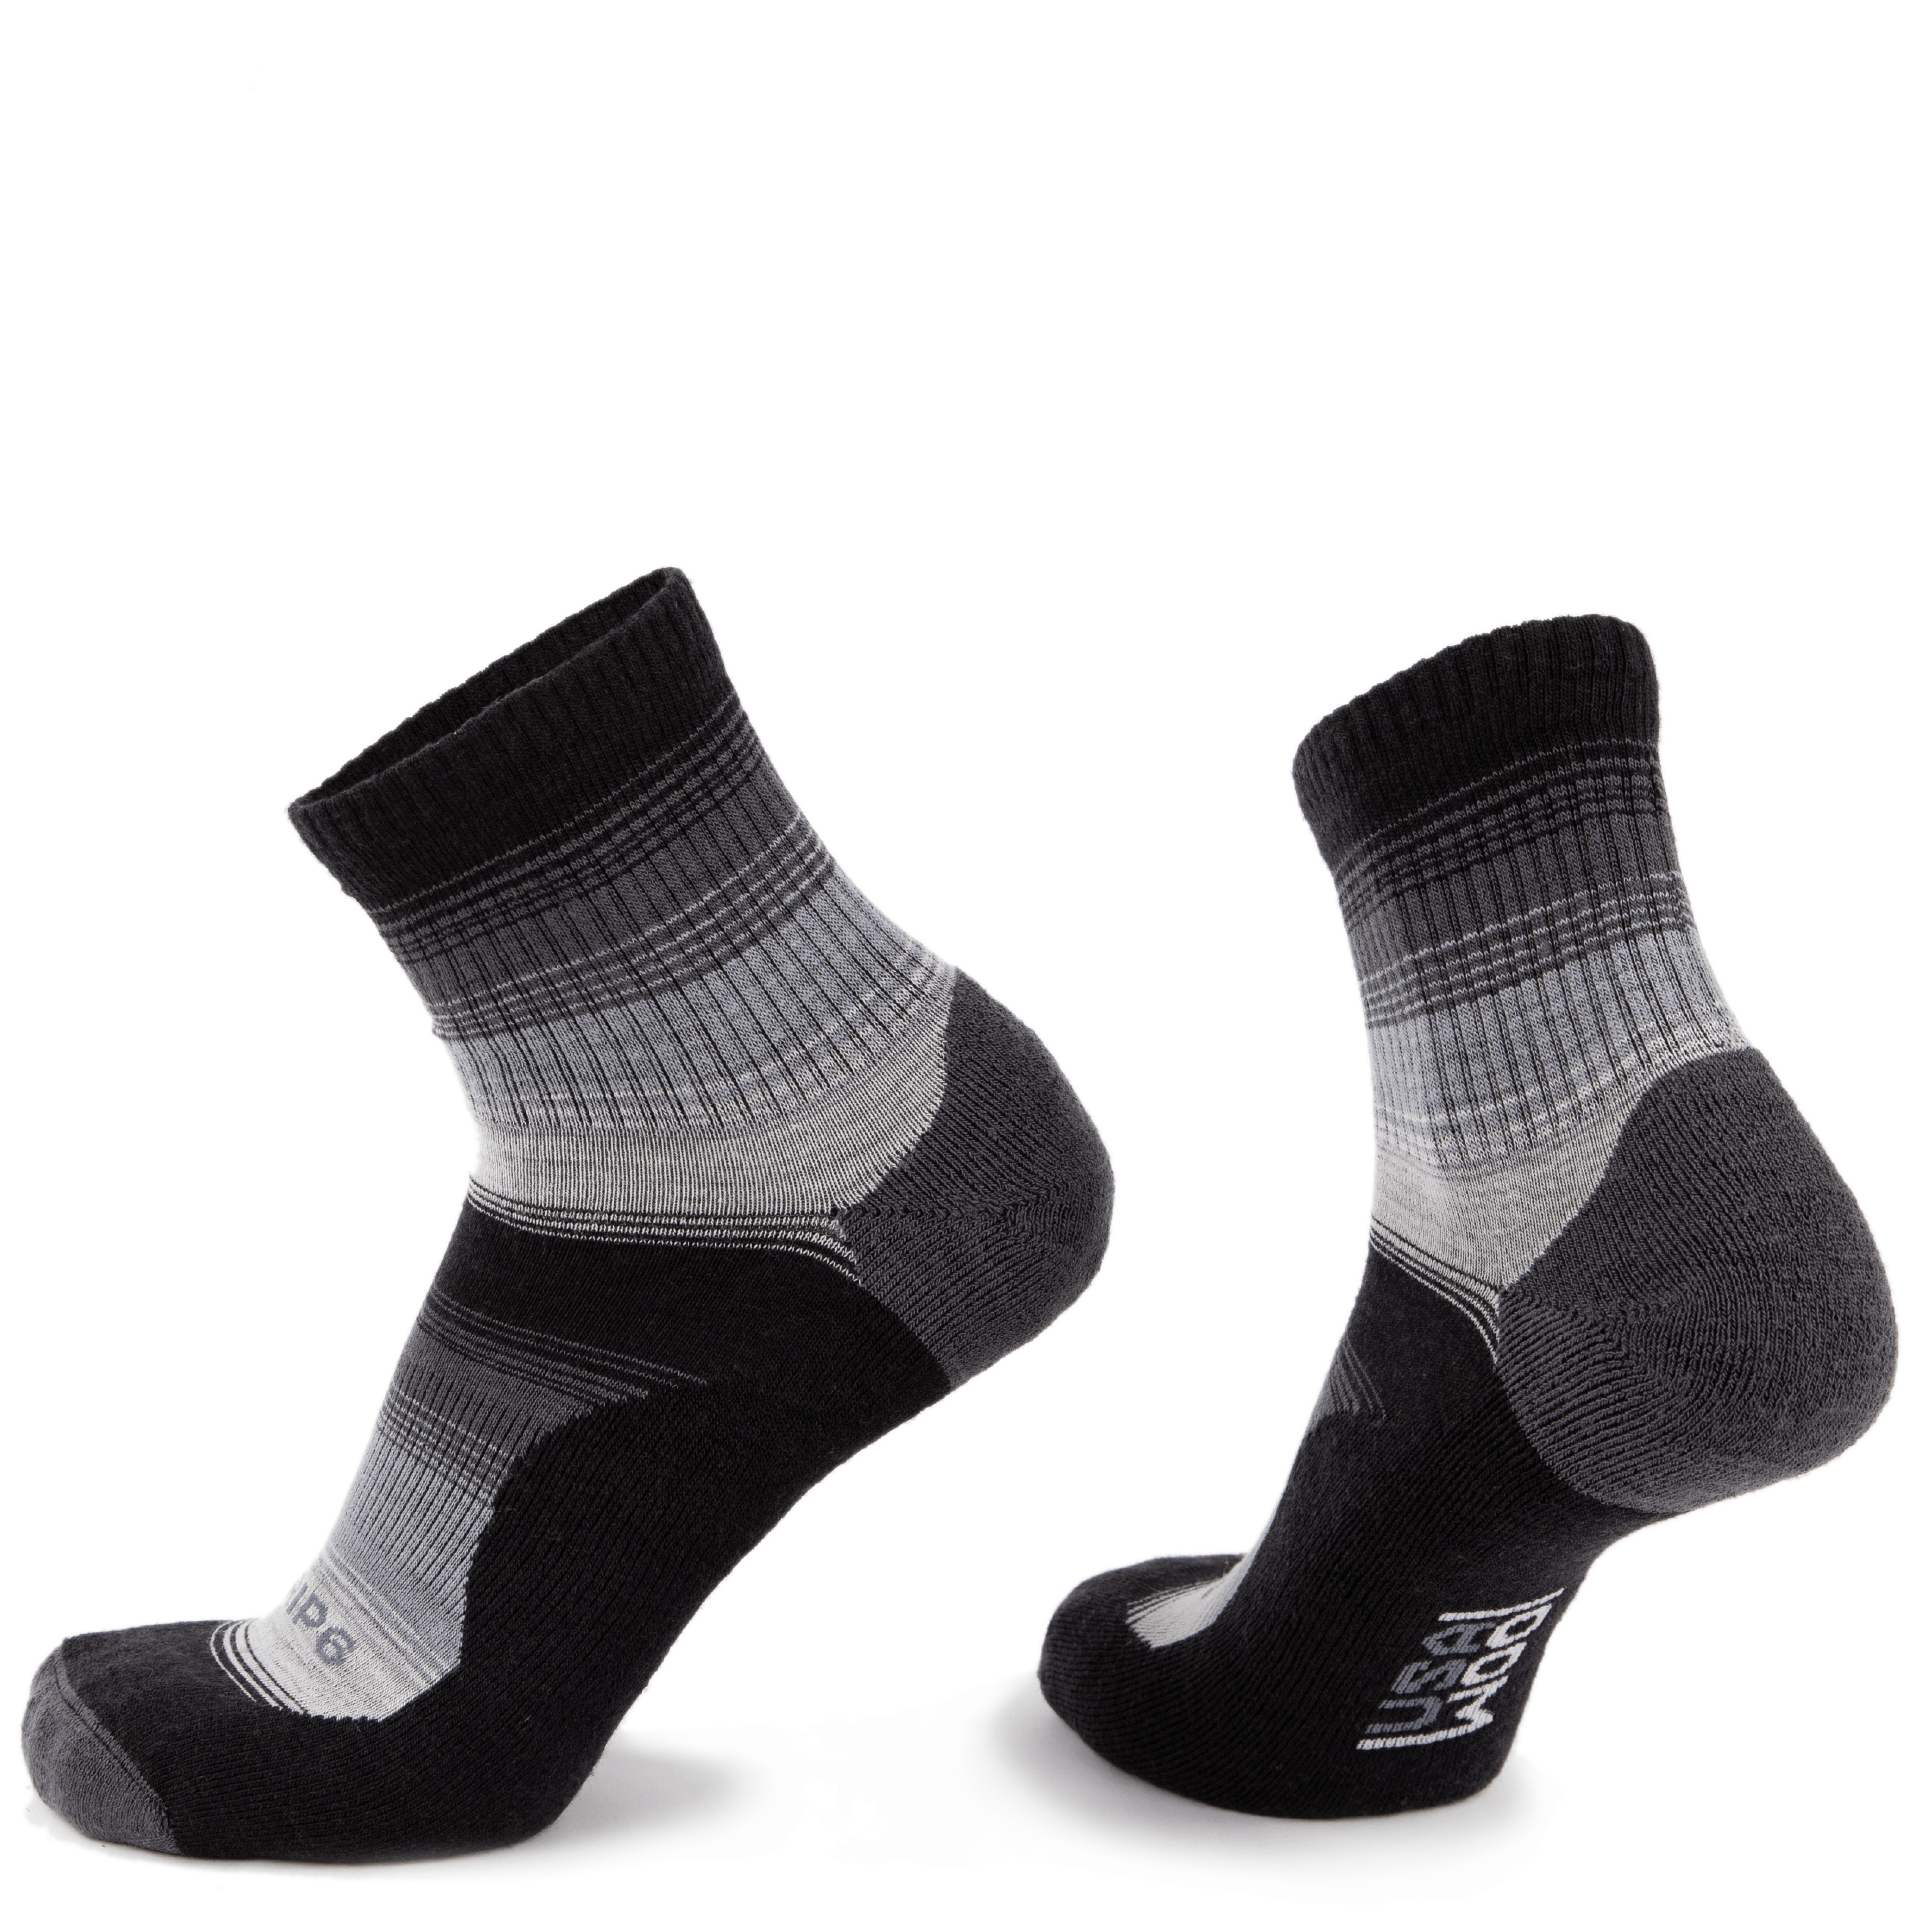 Wool Micro Crew Socks - Fade Black